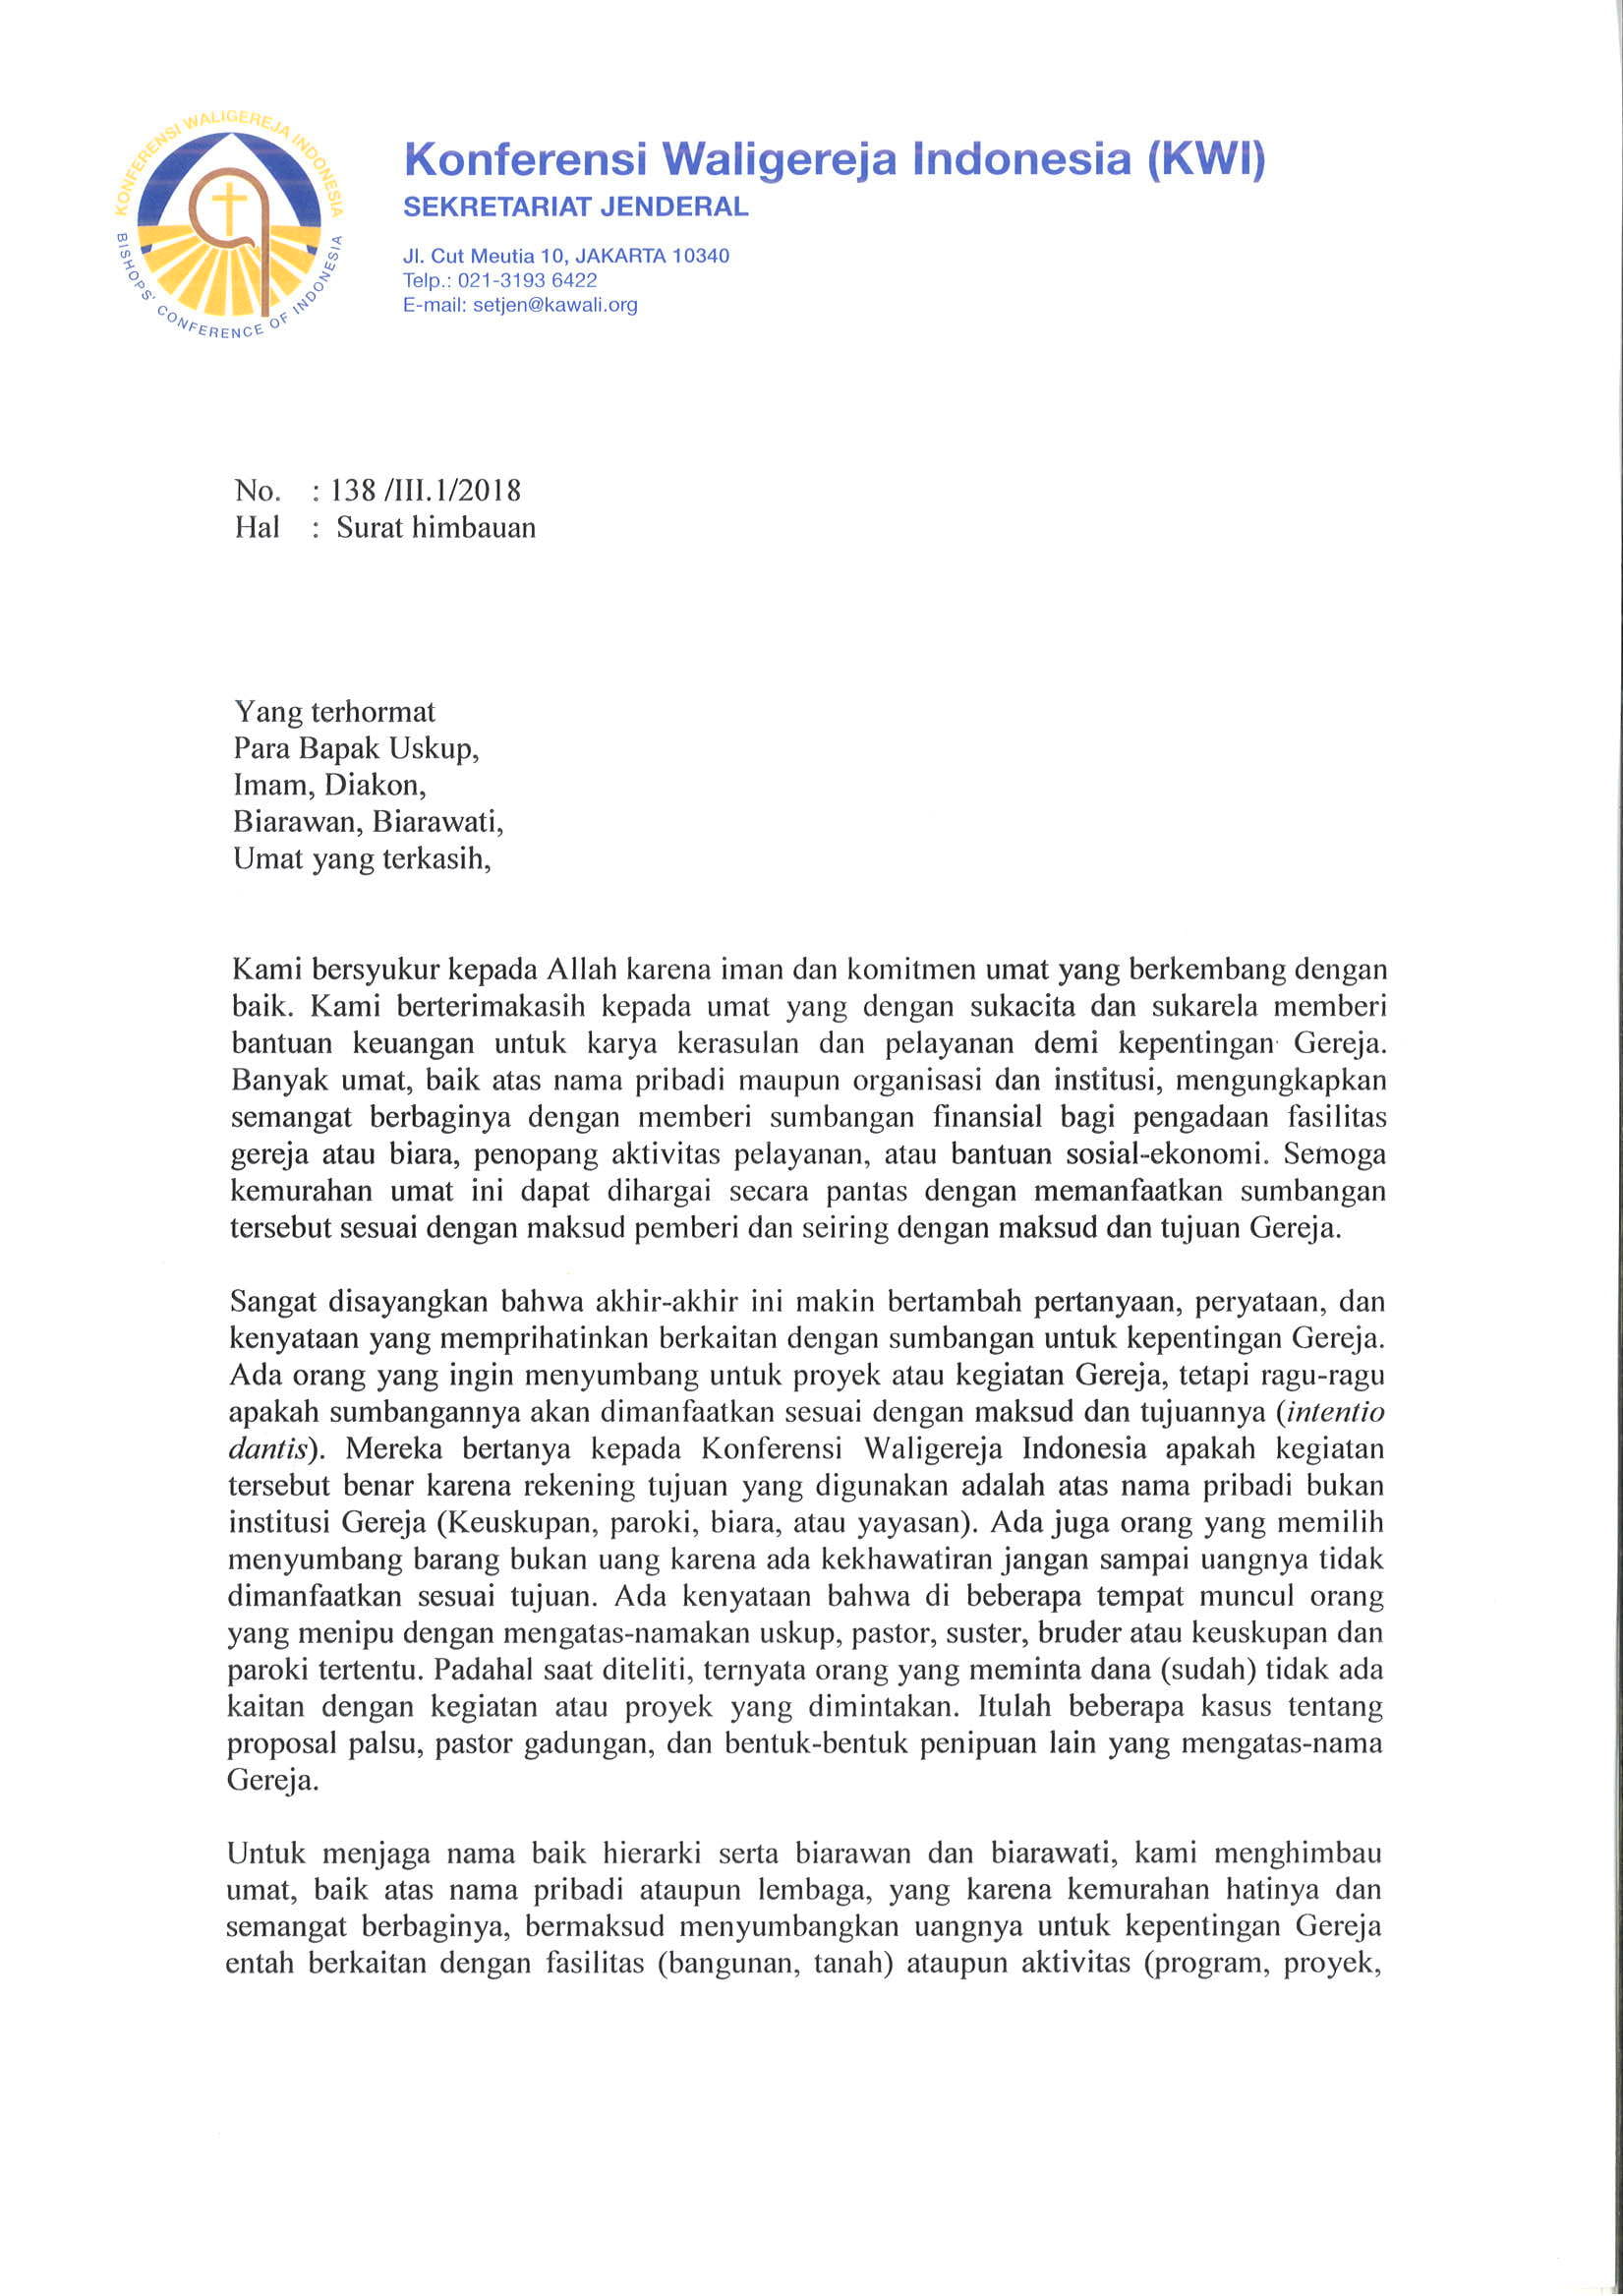 Surat Imbauan dari KWI  Departemen Dokumentasi dan 